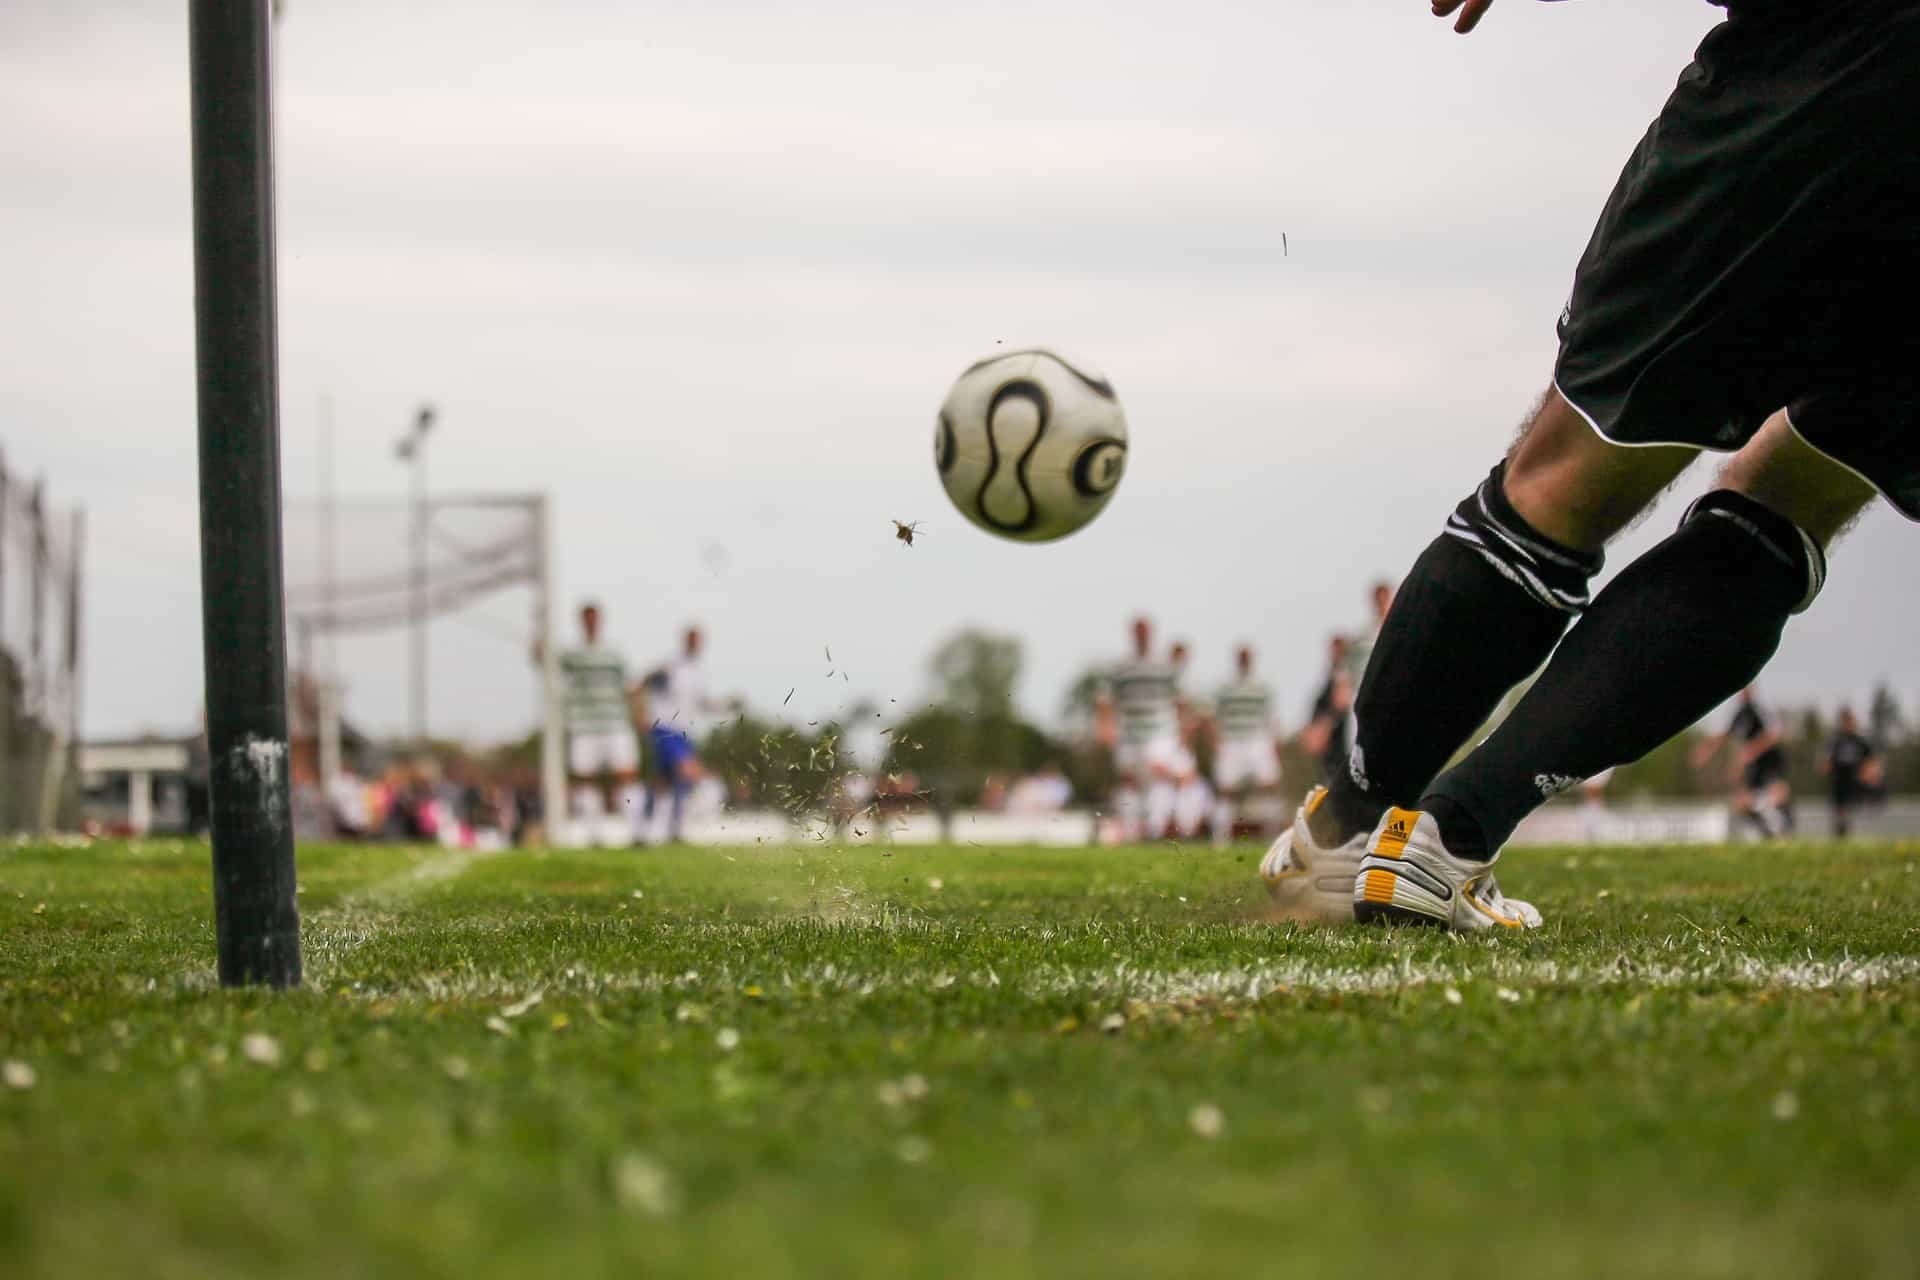 Während eines Spiels fliegt der Fußball direkt auf den Torwart zu, der sich für die Abwehr in Position bringt.